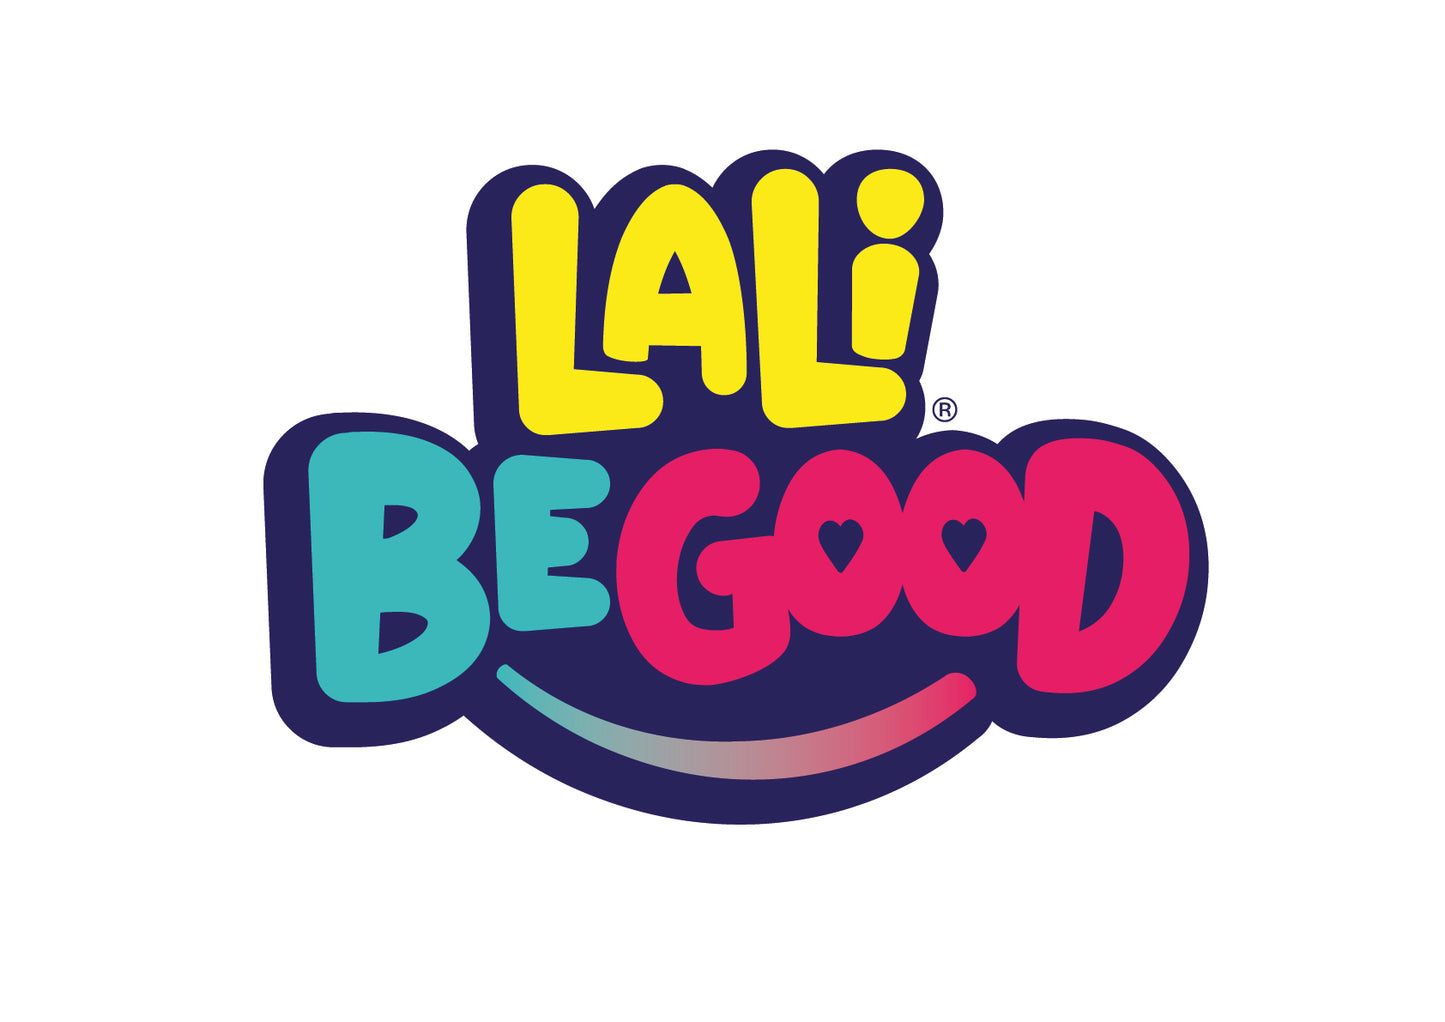 Discografia de la Lali BeGood (WAV i MP3)